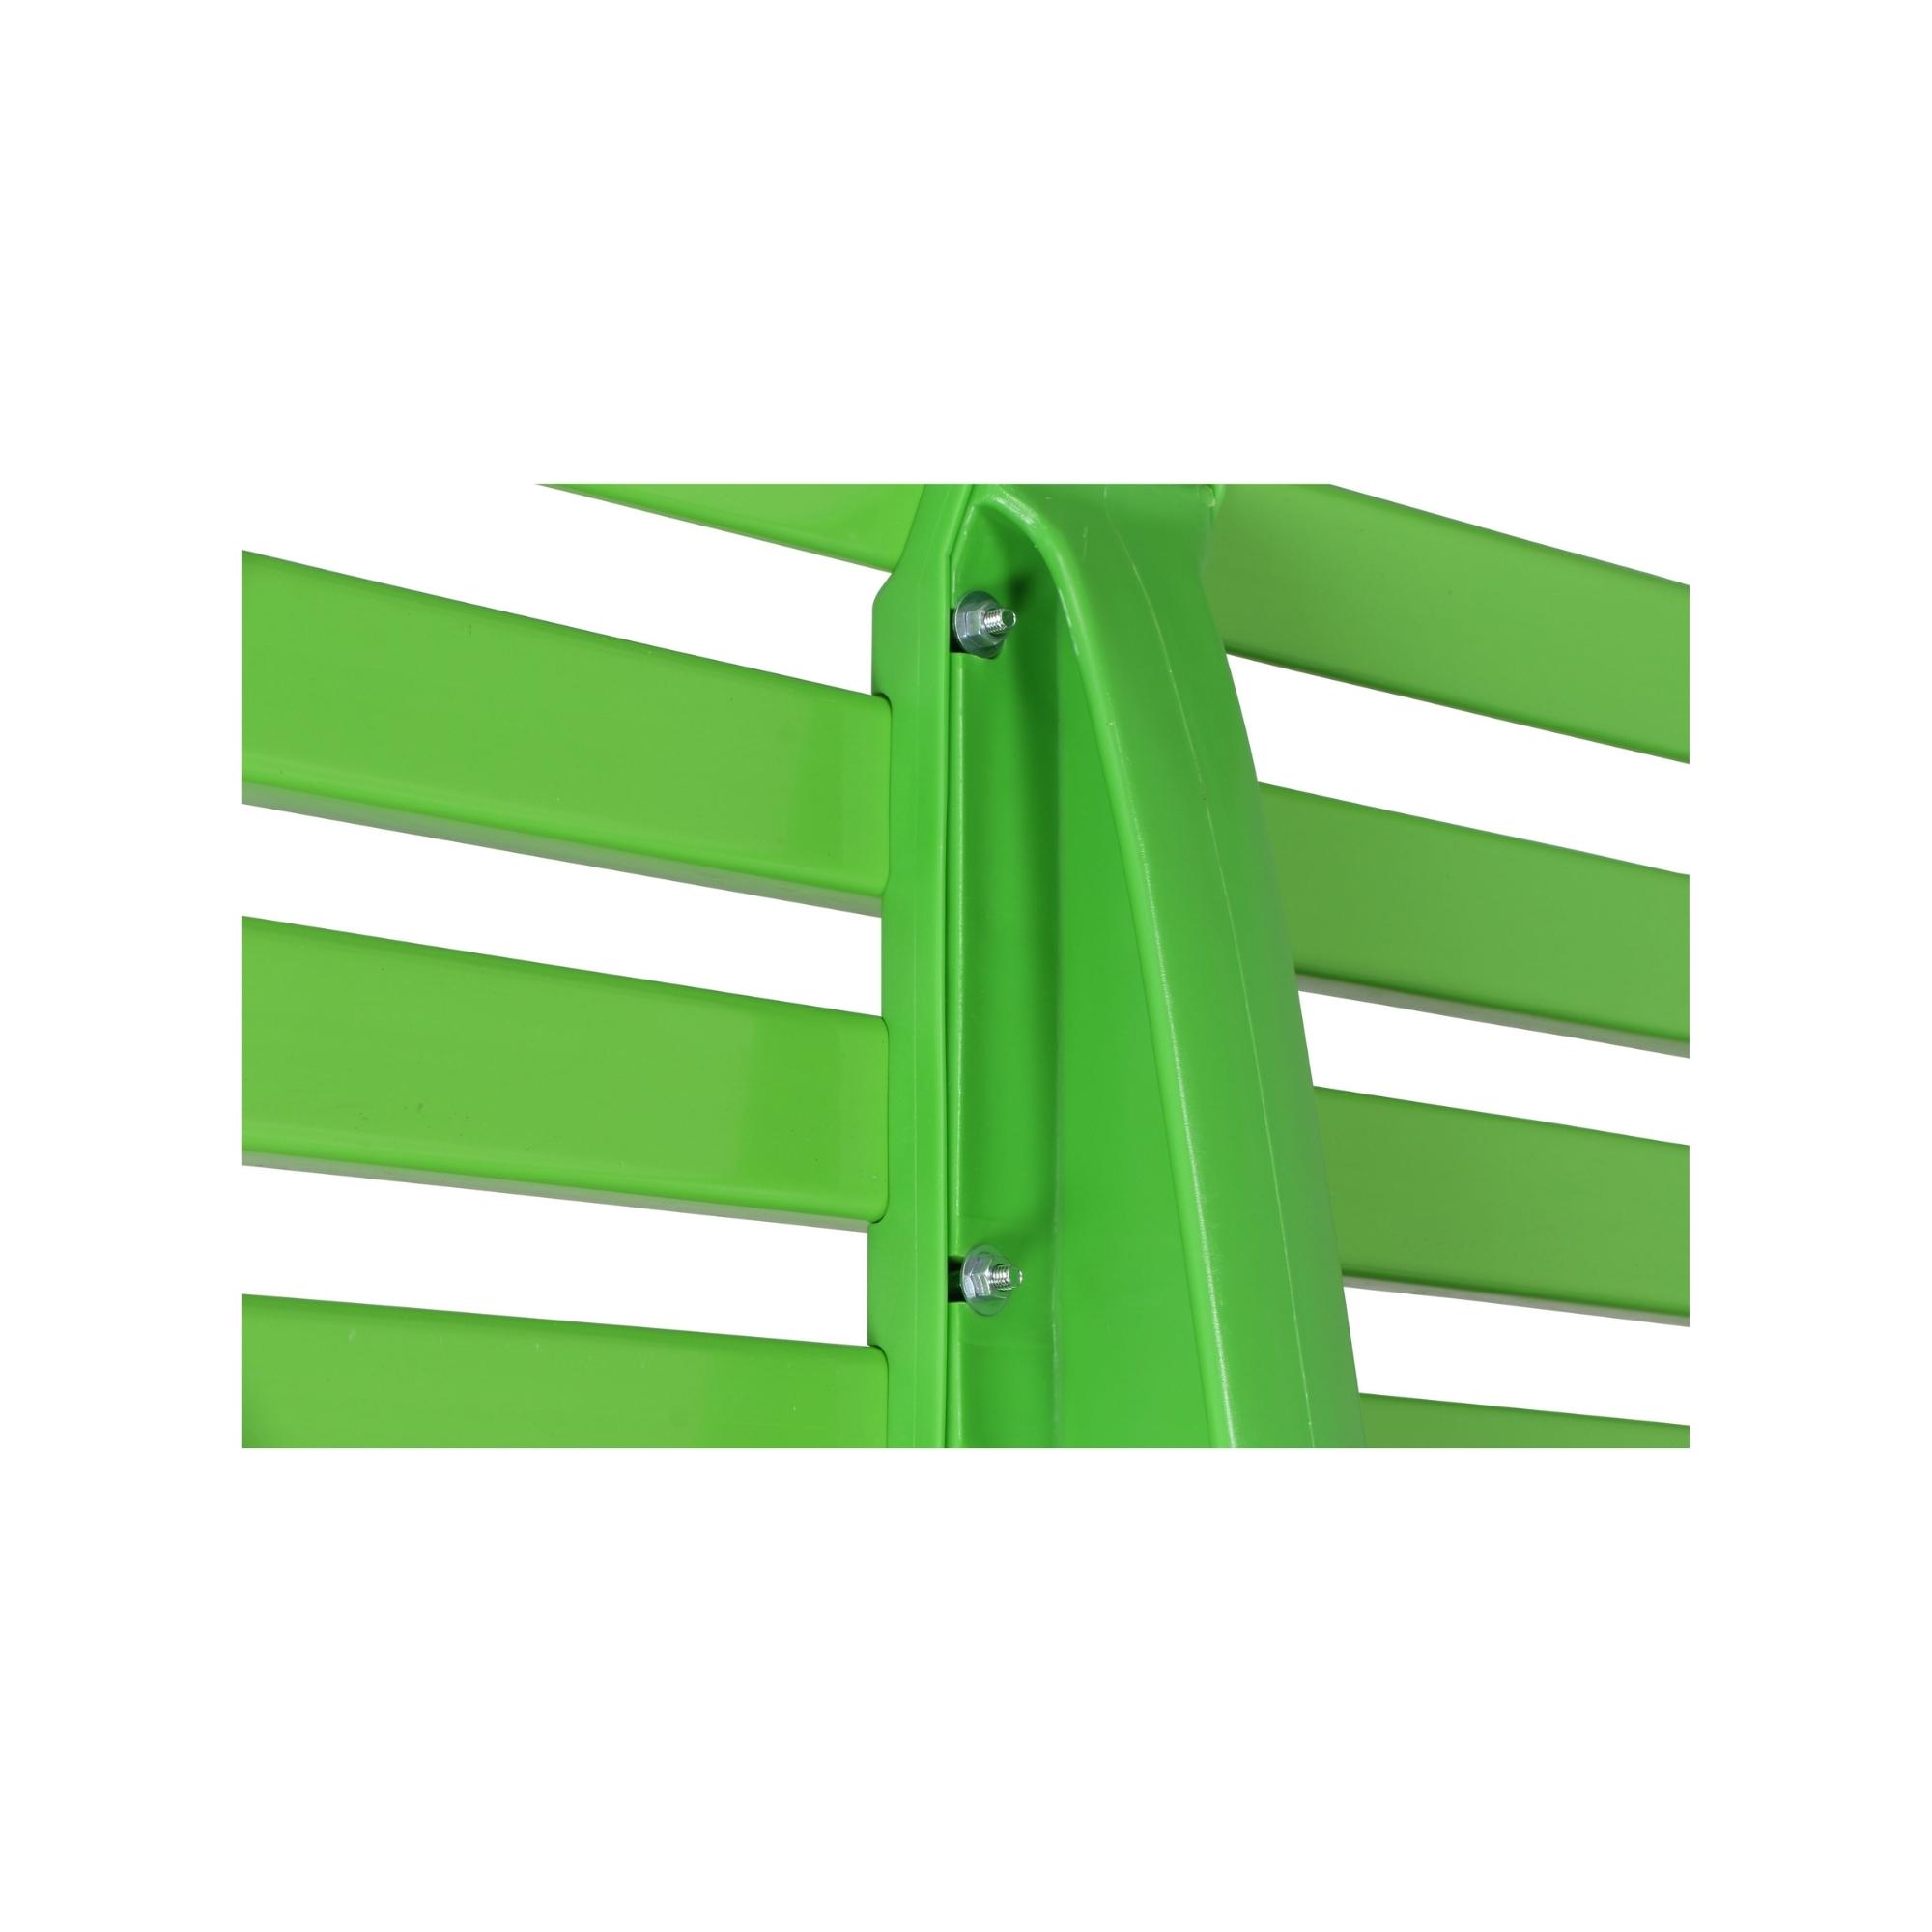 Gartenbank Antigua | 2-Sitzer | Apfelgrün | HxBxT 74x120x54cm | Witterungs- & UV-beständiger Kunststoff | Parkbank Sitzbank Außenbereich Garten Balkon Terrasse